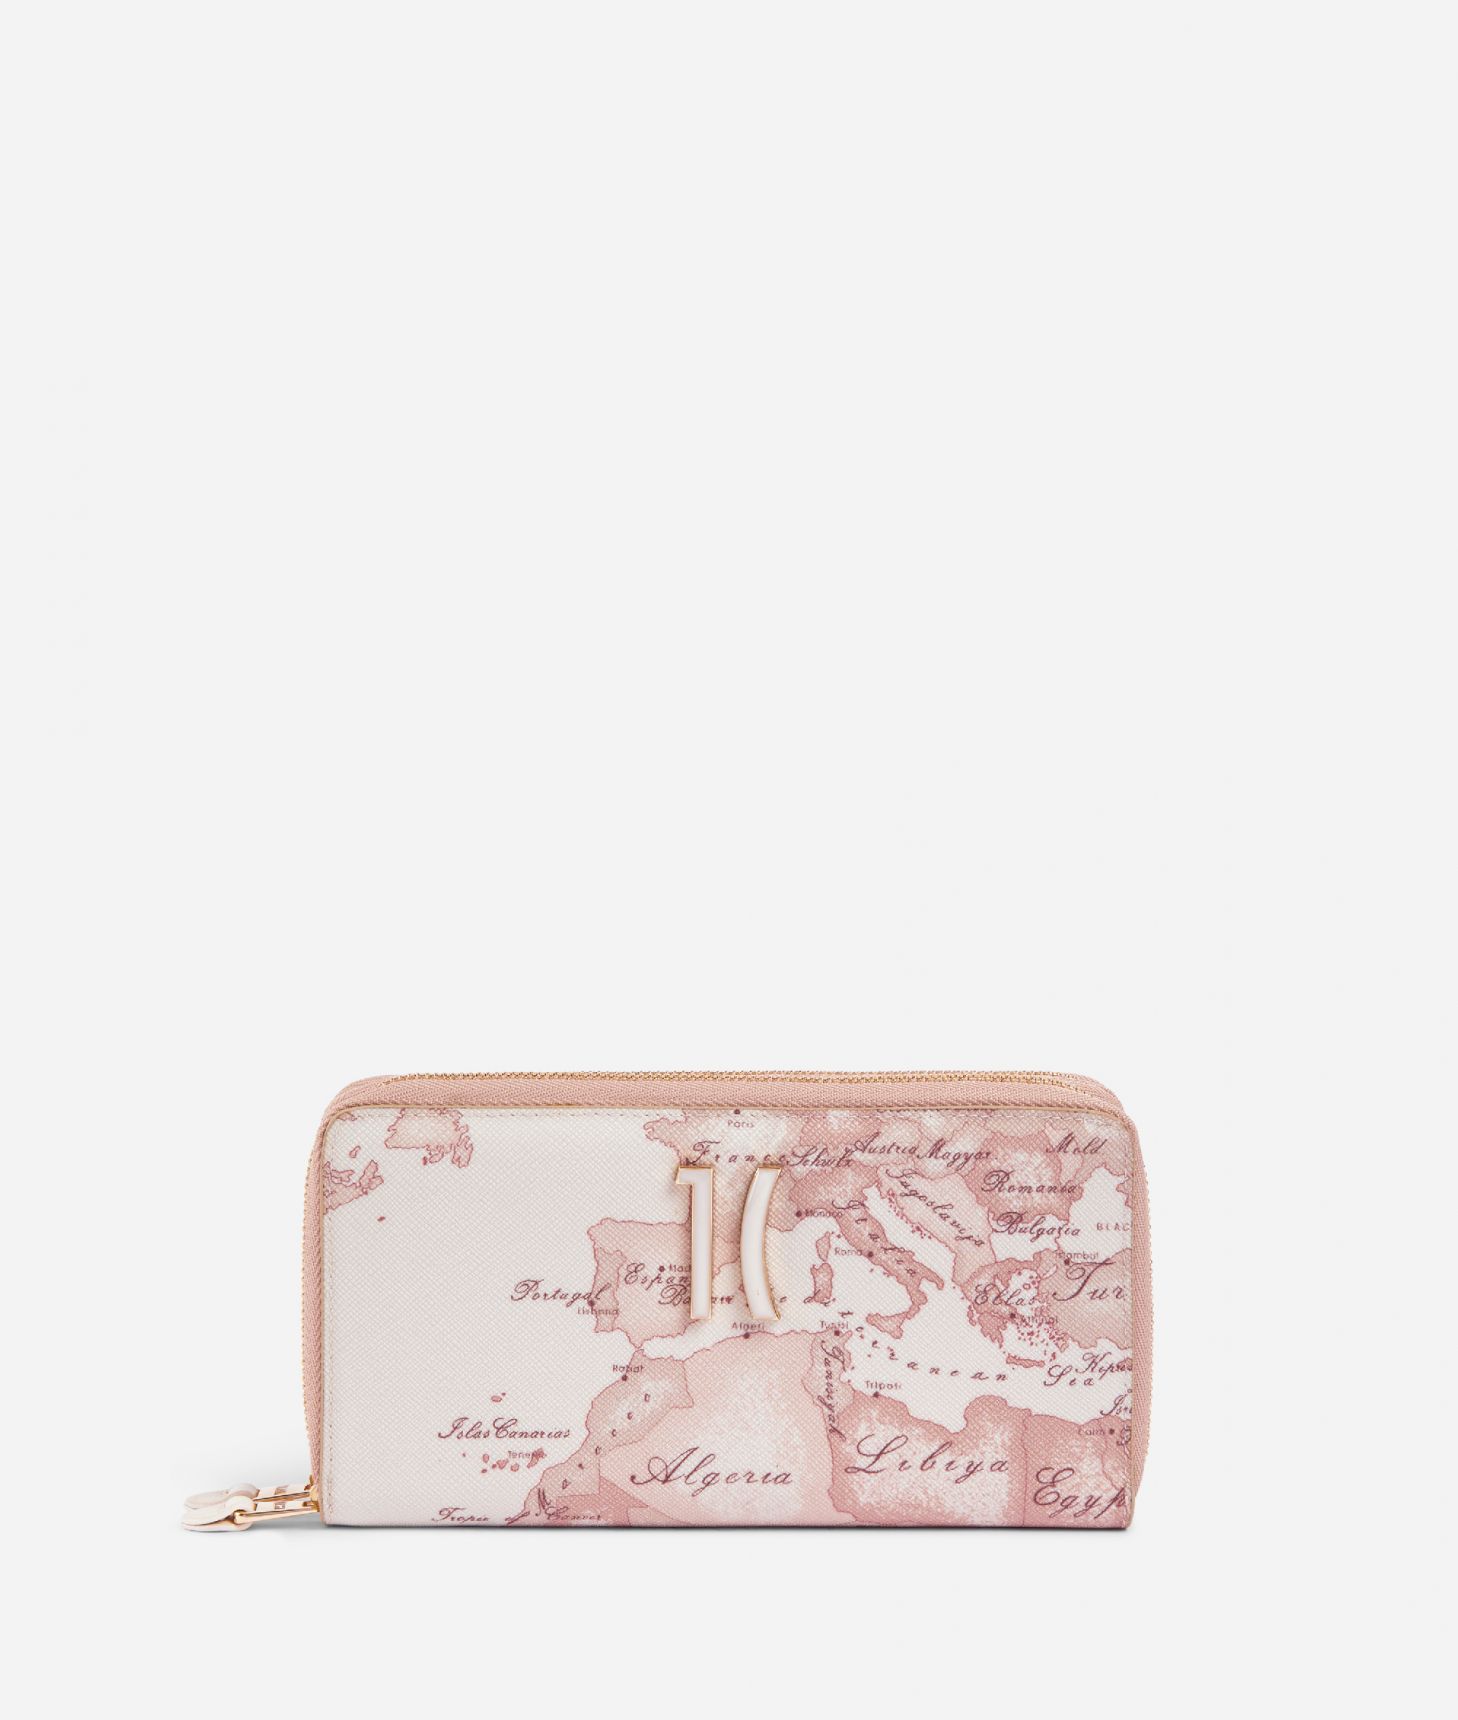 Geo Carrara double Zip around wallet Pink,front